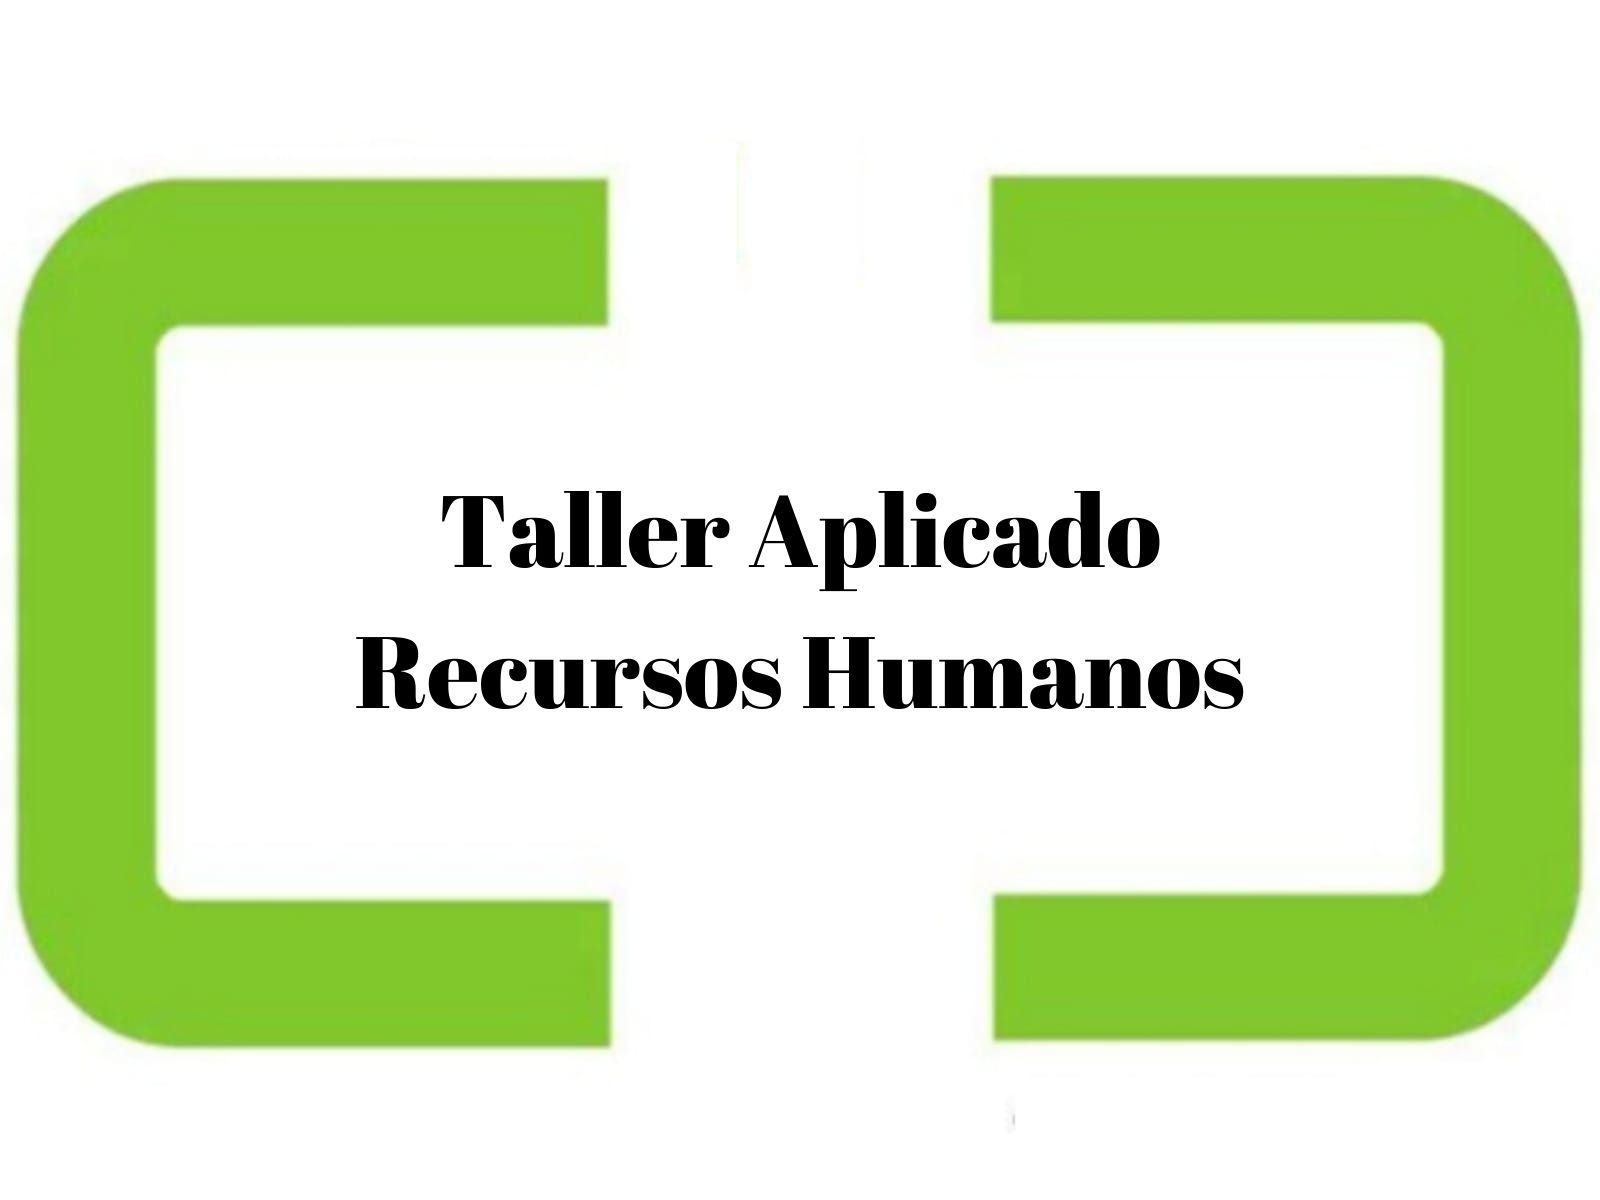 Taller Aplicado Recursos Humanos